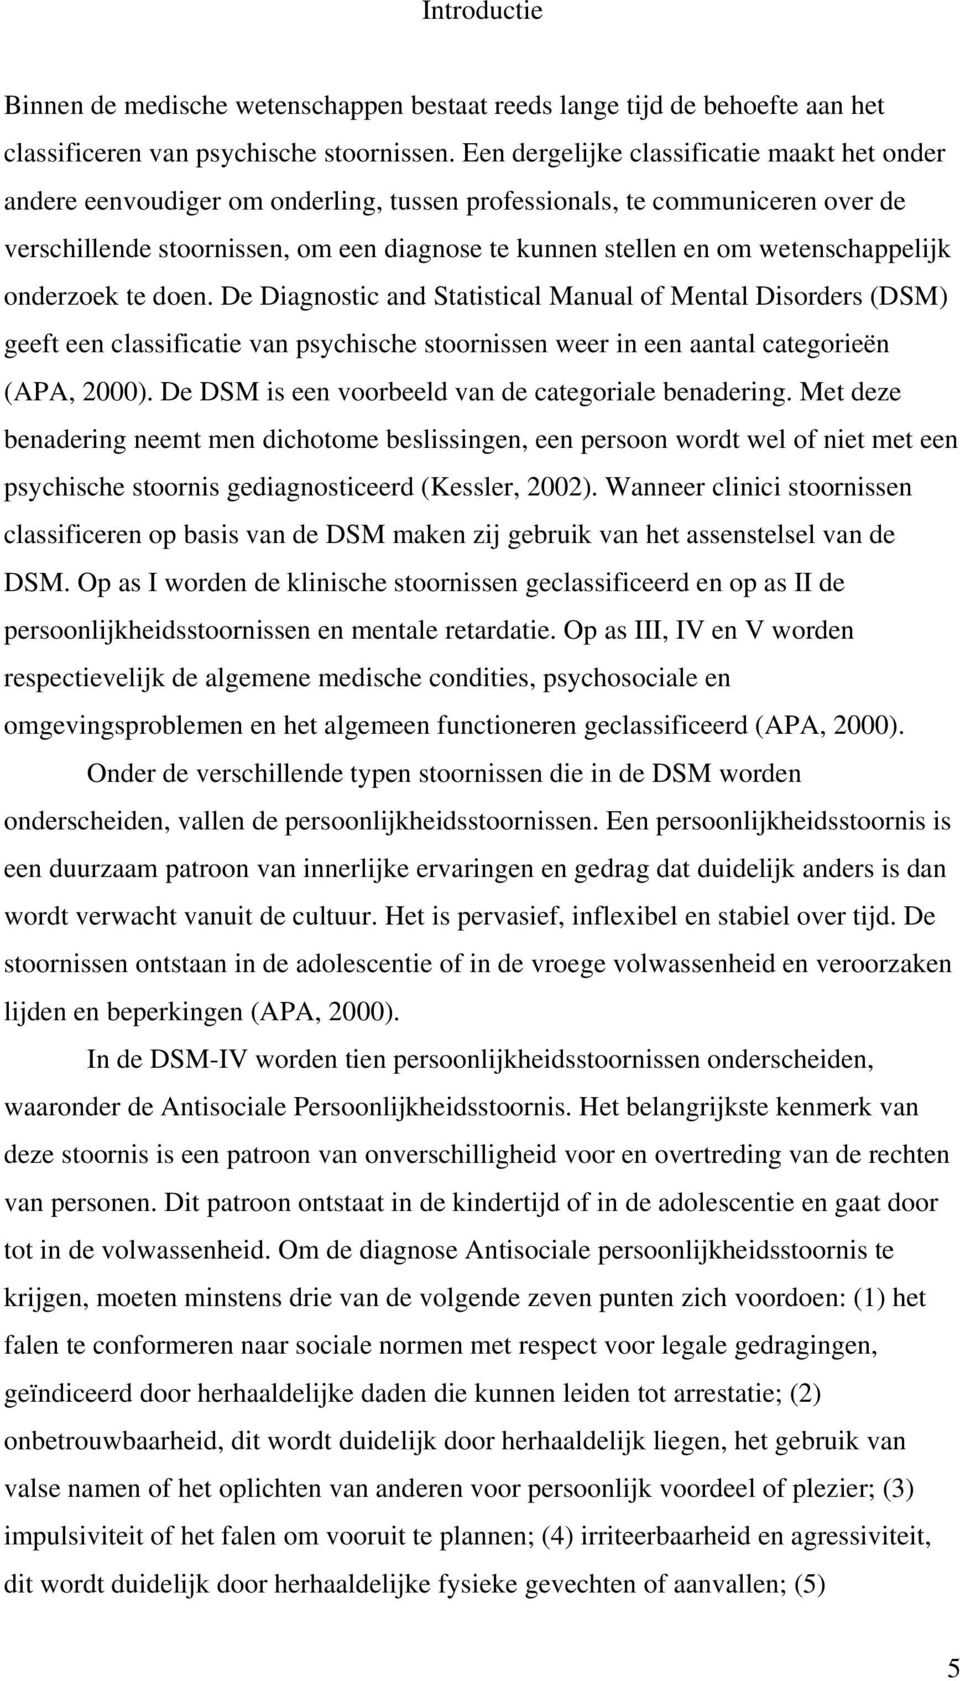 wetenschappelijk onderzoek te doen. De Diagnostic and Statistical Manual of Mental Disorders (DSM) geeft een classificatie van psychische stoornissen weer in een aantal categorieën (APA, 2000).